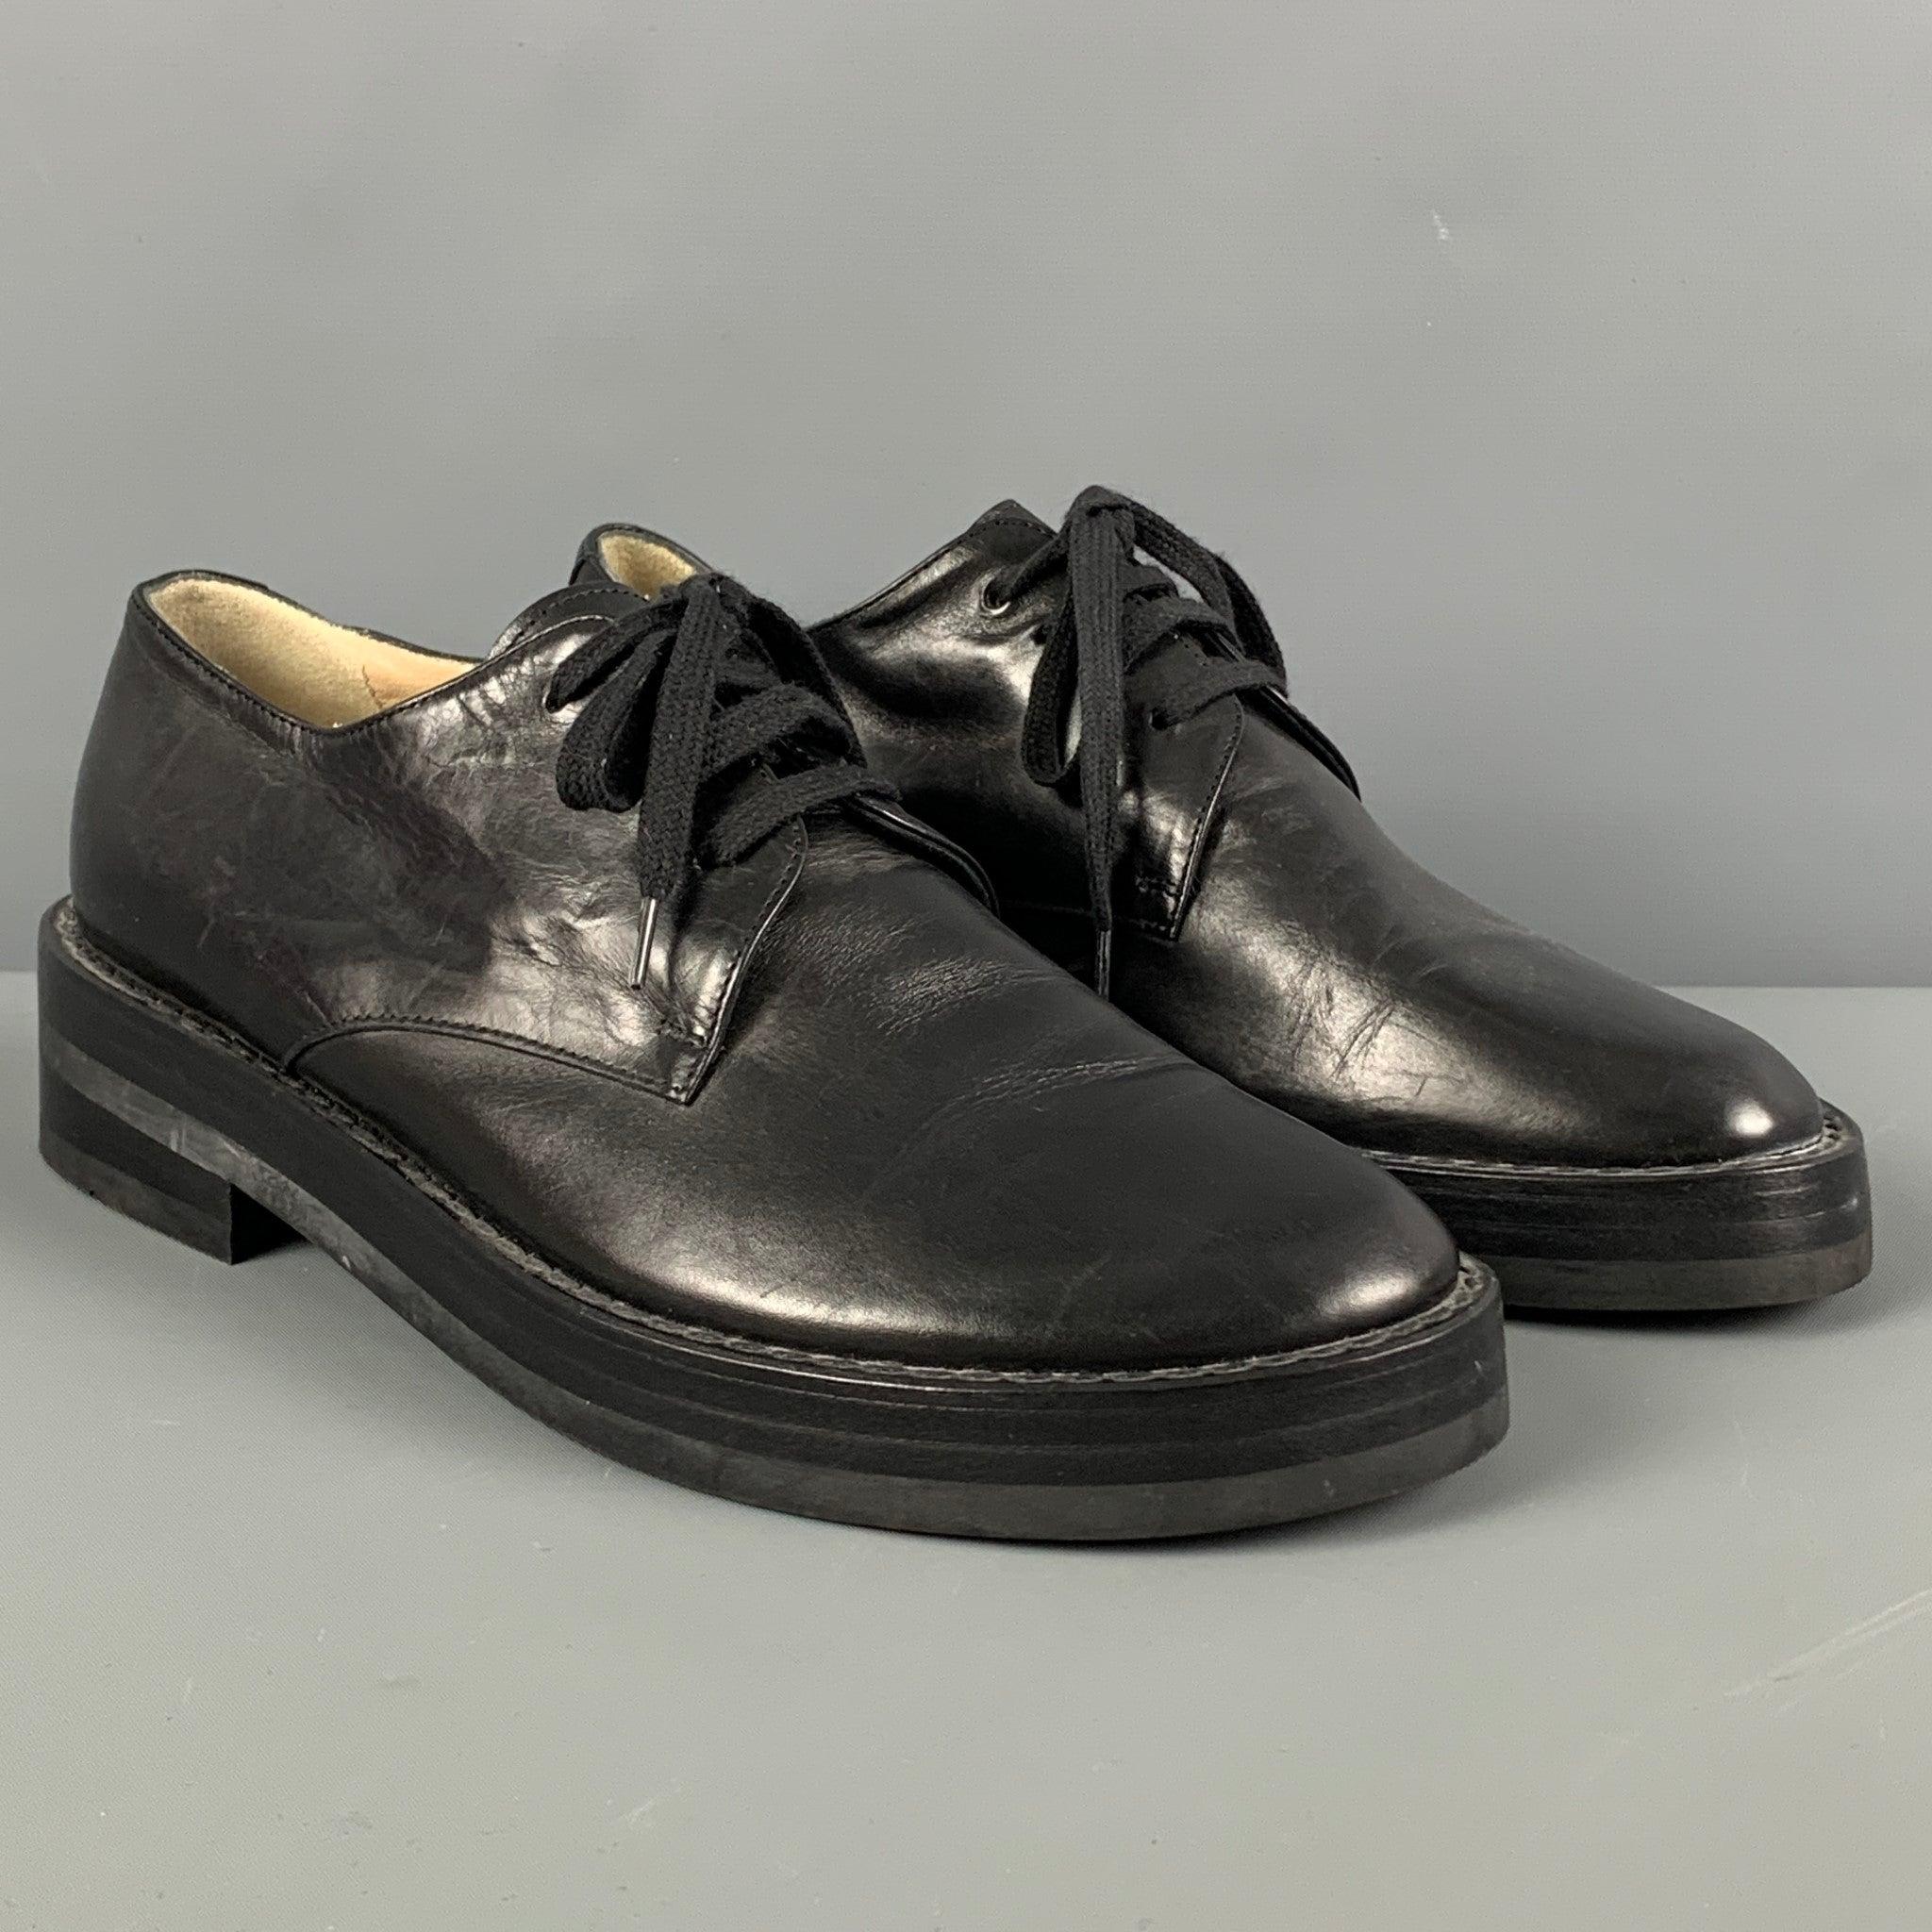 Les chaussures ANN DEMEULEMEESTER sont en cuir noir et présentent une semelle compensée ainsi qu'une fermeture à lacets. Fabriquées en Italie.
Très bien
Etat d'occasion. Légère usure. En l'état.  

Marqué :   37.5Semelle : 10.75 pouces  x 4,25